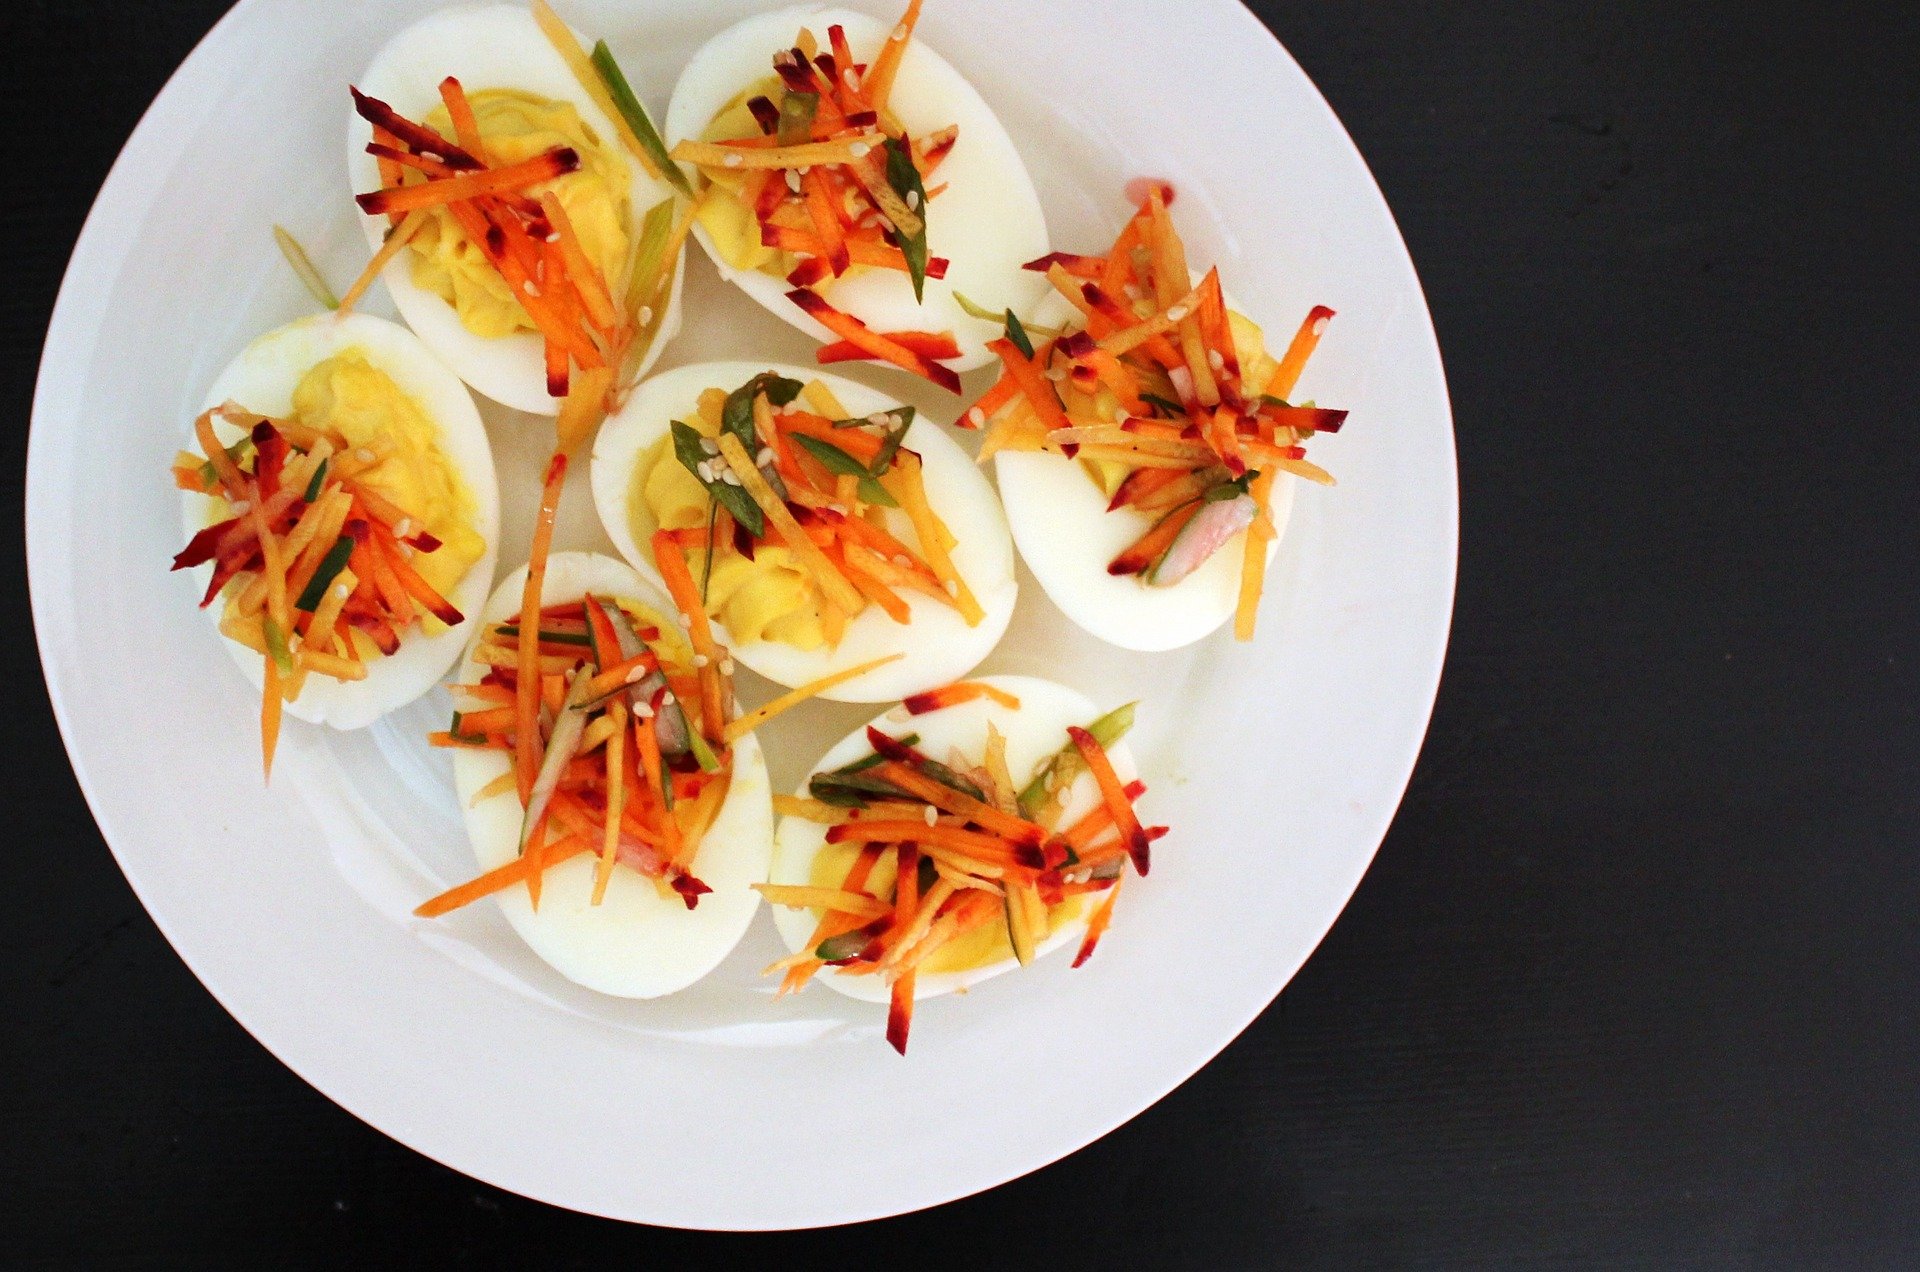 Eier gehören natürlich zum Osterbrunch dazu. Belegt mit feiner Rohkost und Sesam werden sie zum gesunden Snack.